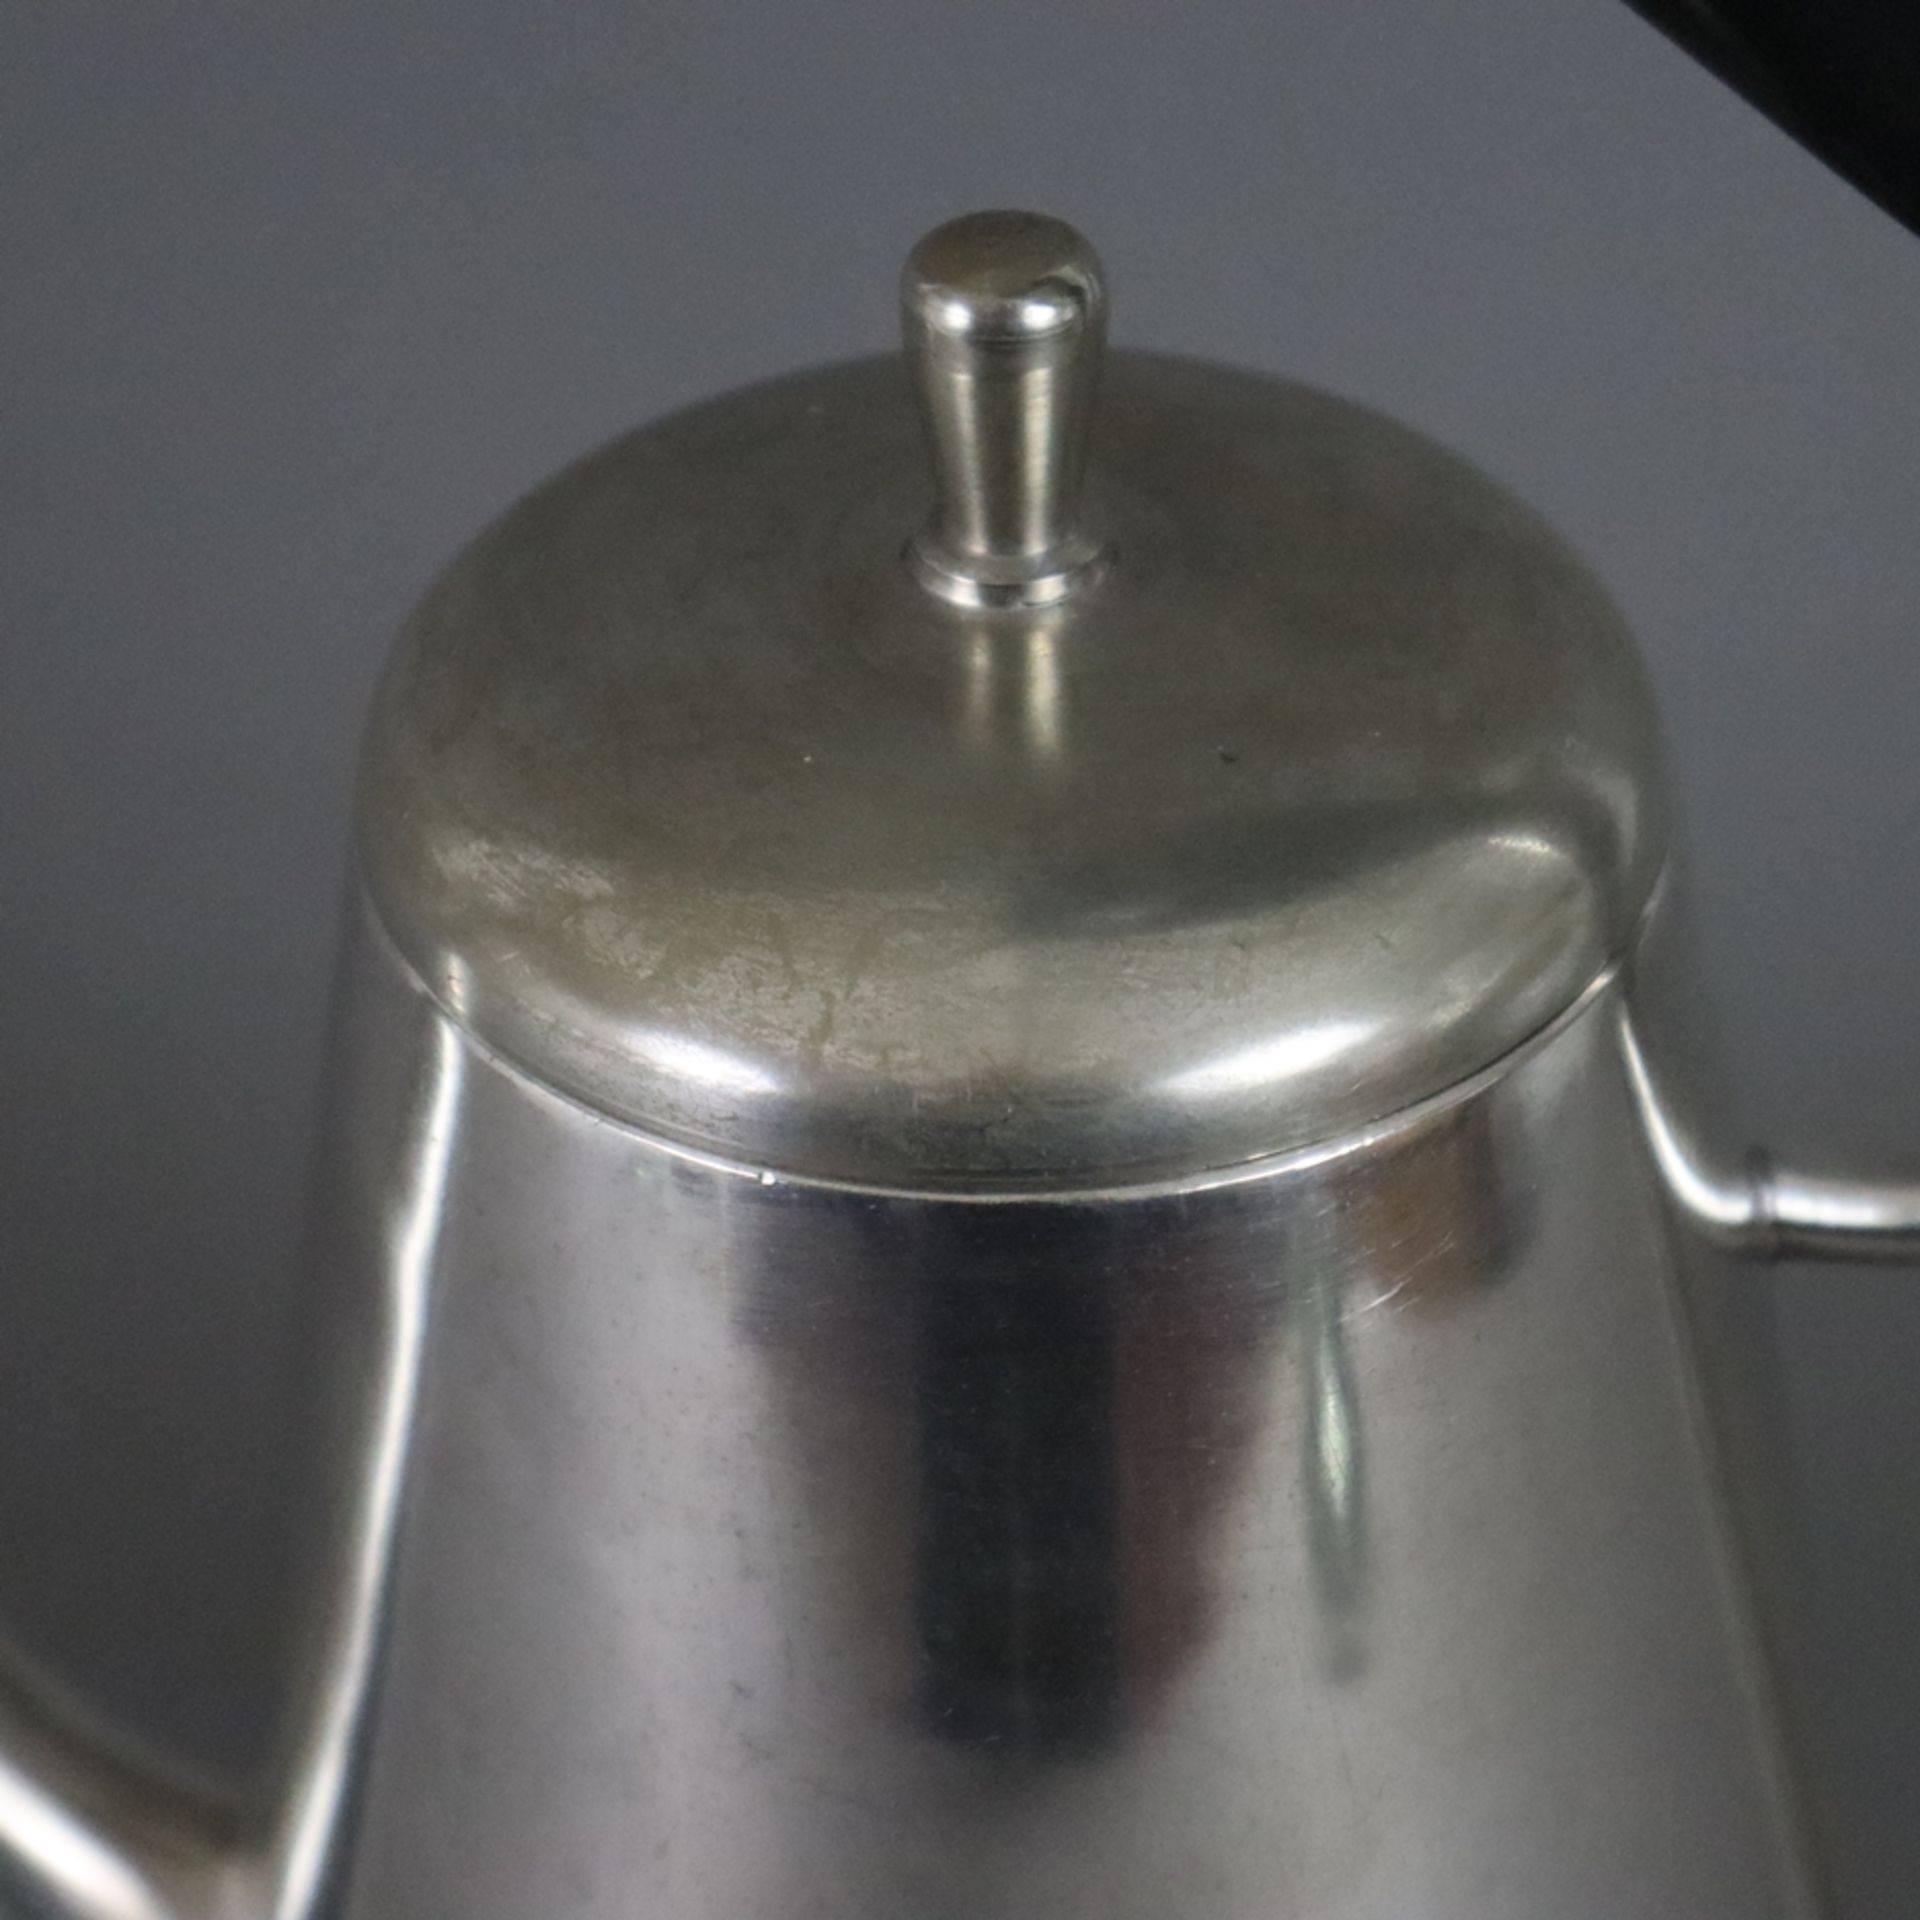 Mid-Century Kaffeekanne - um 1940/50, Weißmetall, große konische Kanne auf drei Füßen, konischer Au - Image 2 of 7